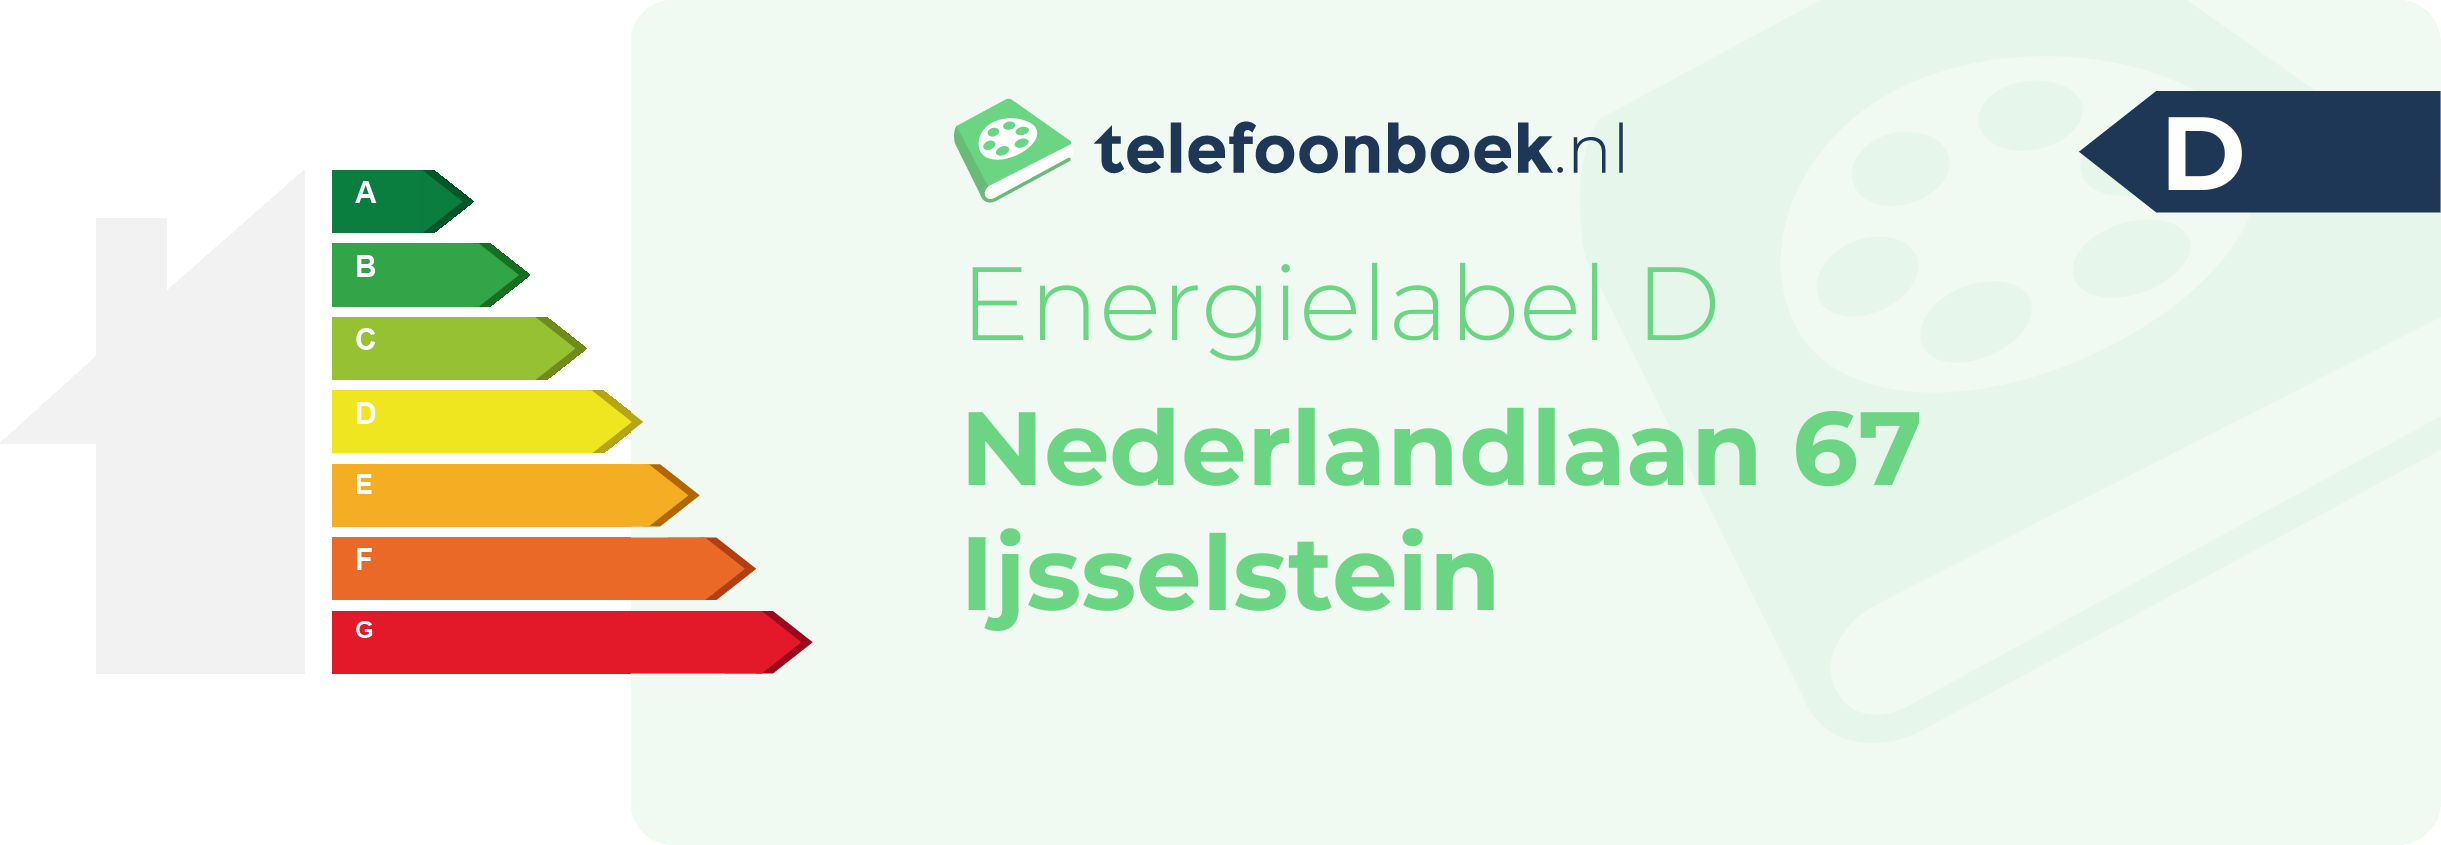 Energielabel Nederlandlaan 67 Ijsselstein